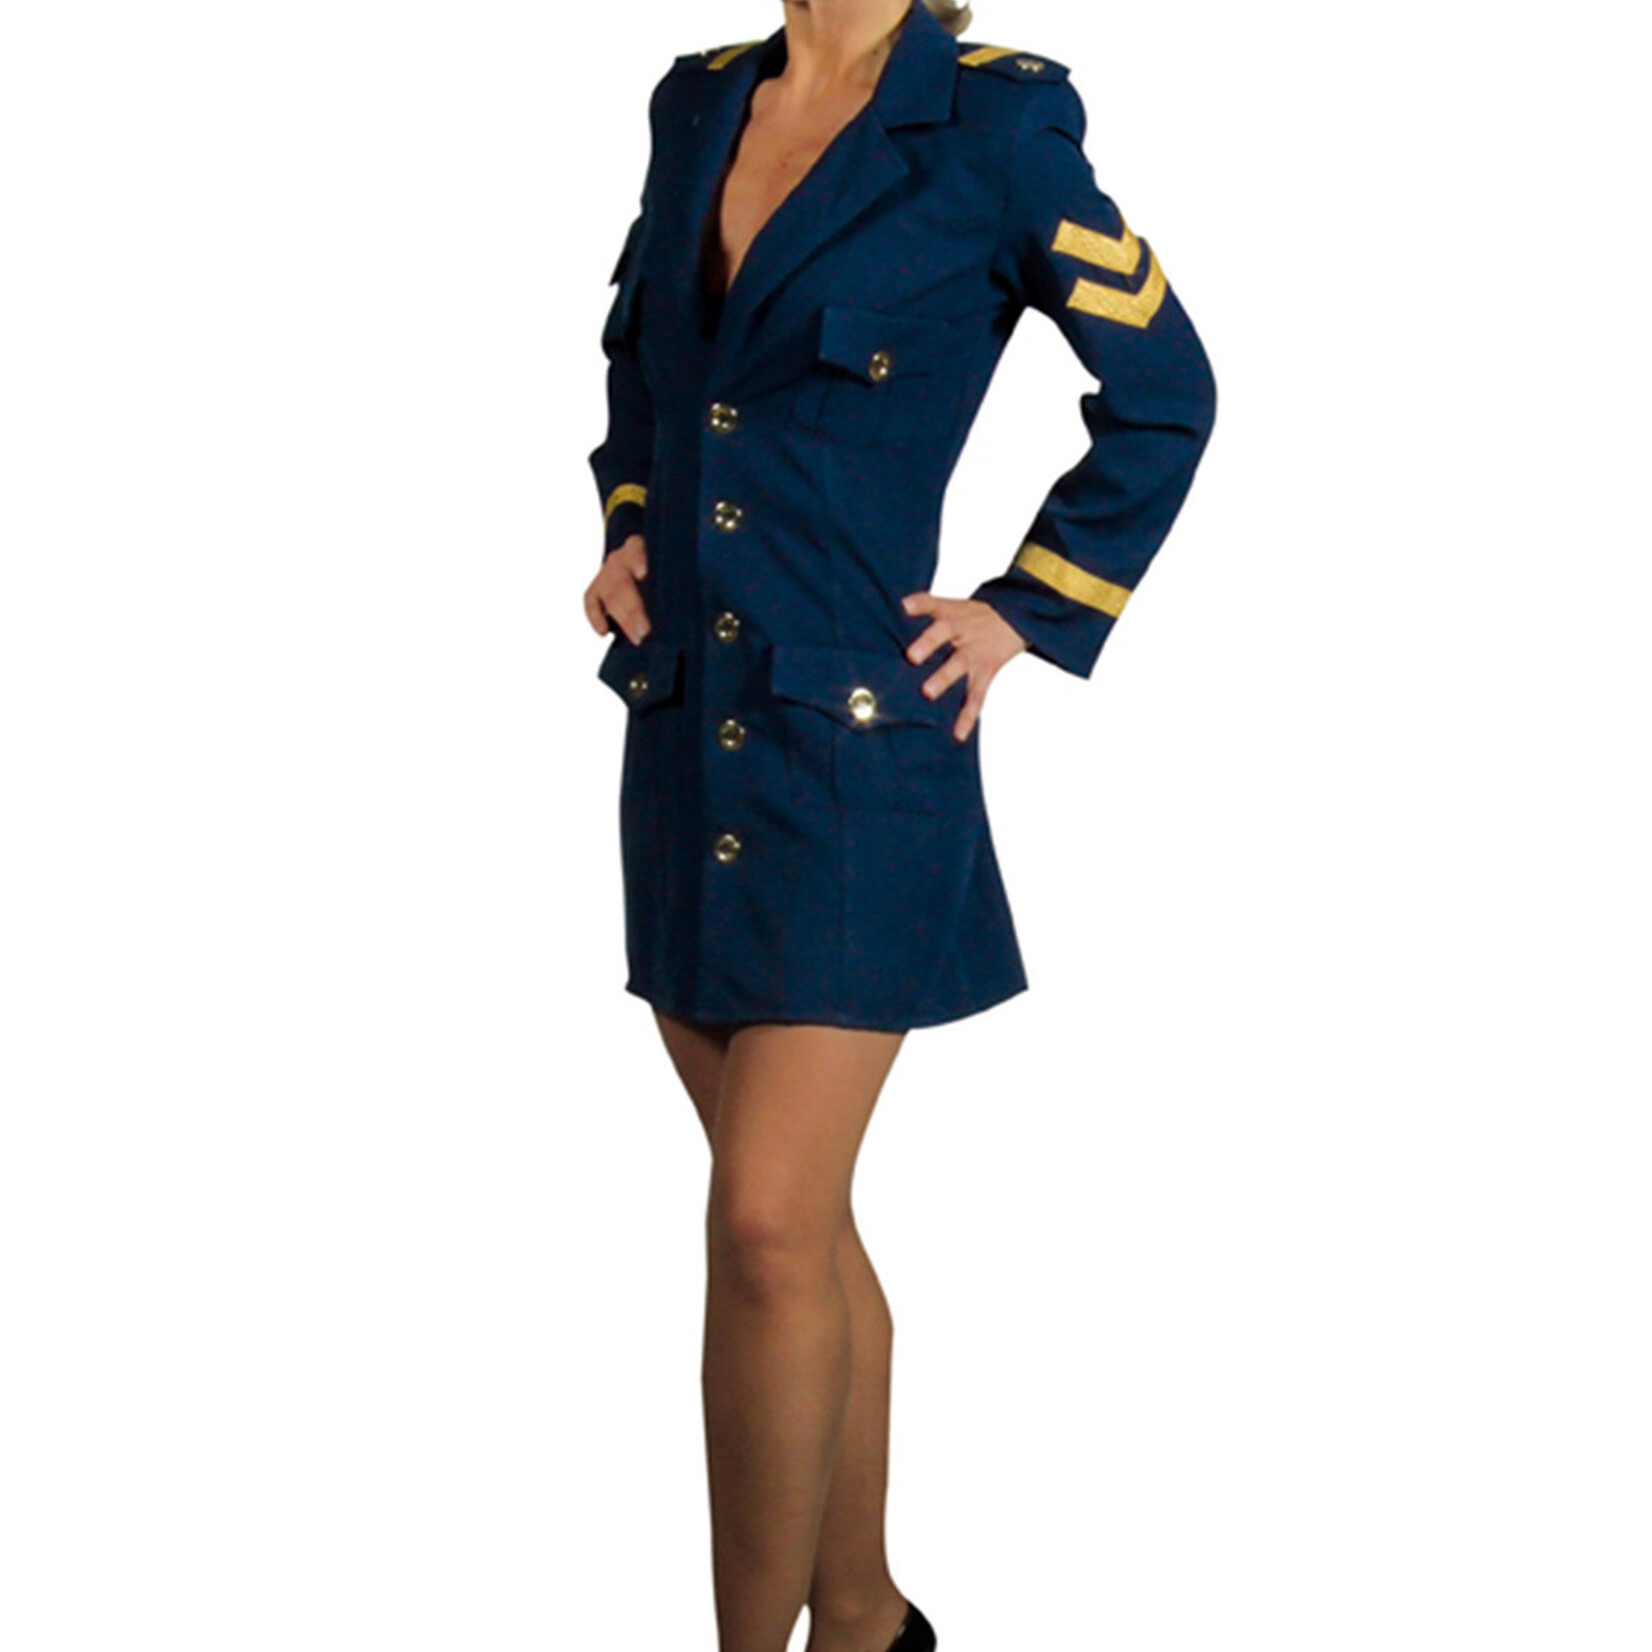 Magic Piloten dame, marine, jurk